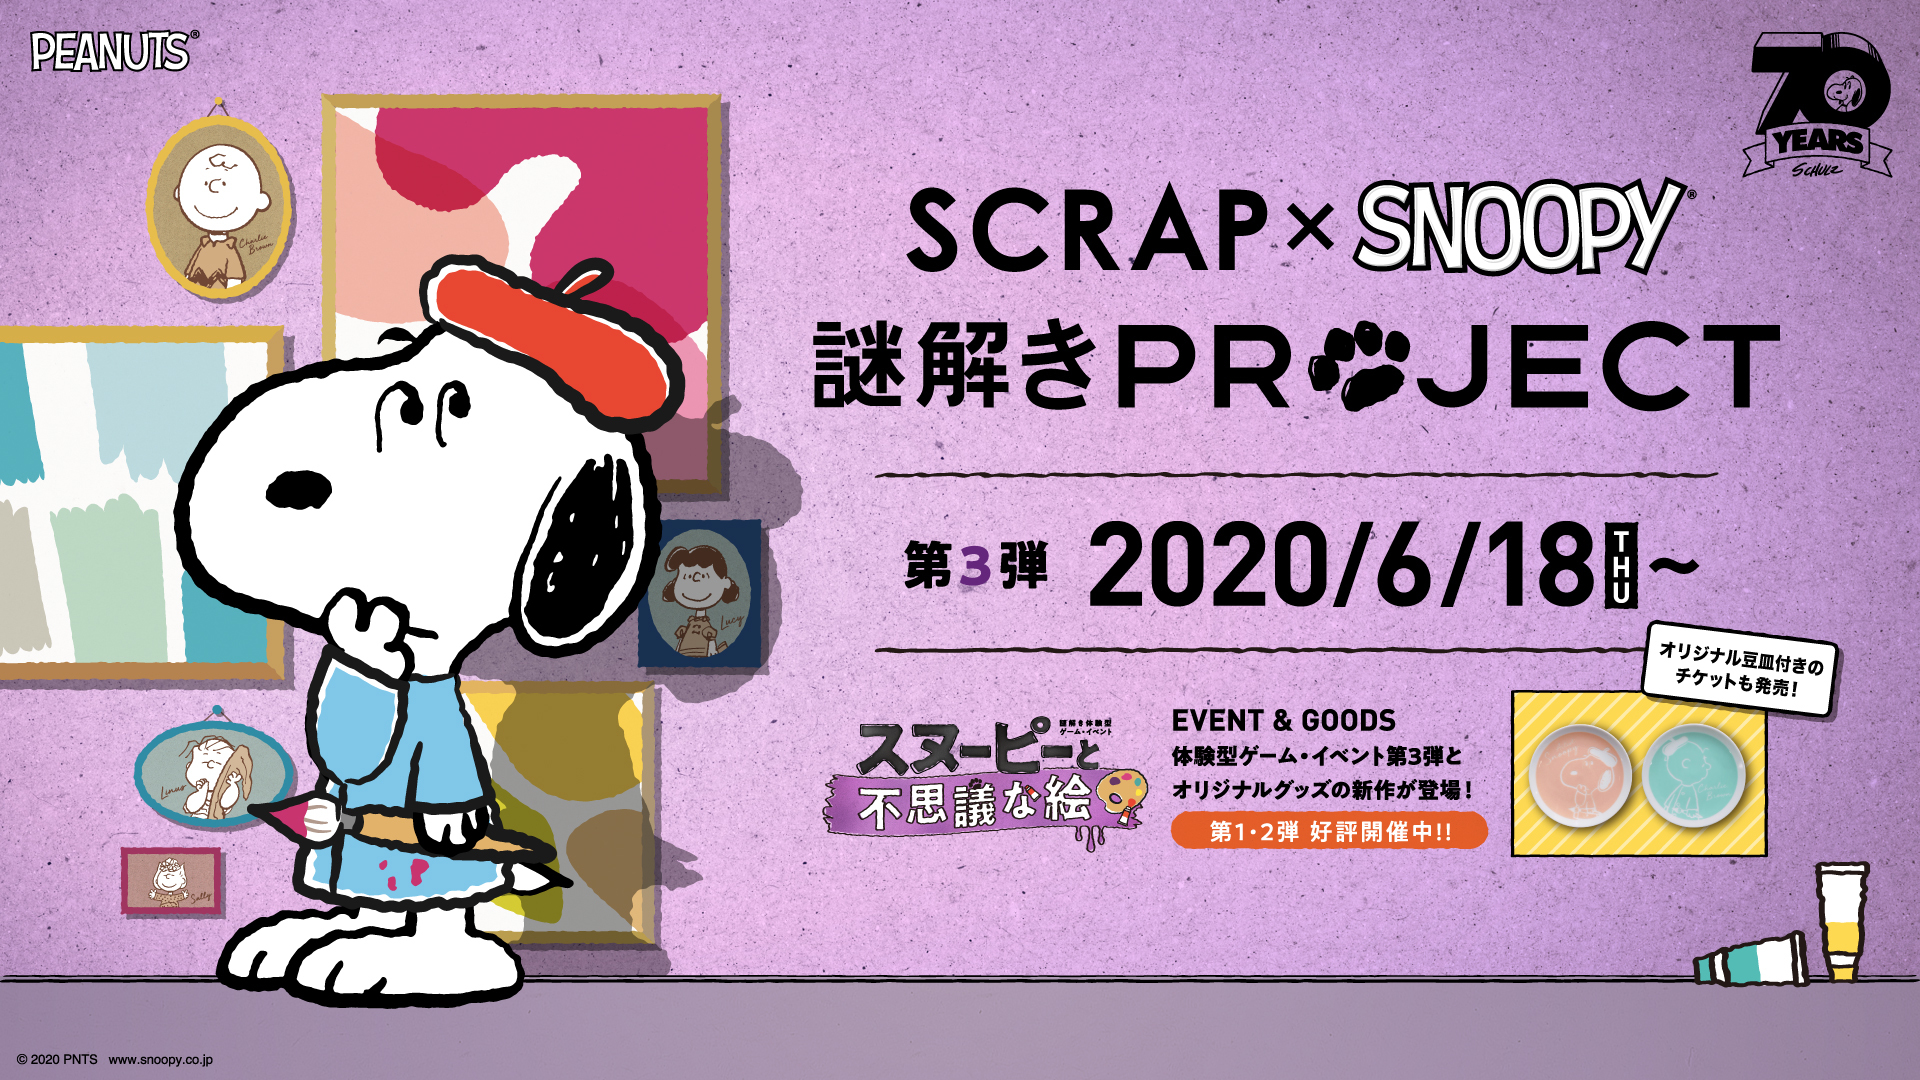 「SCRAP×SNOOPY 謎解きPROJECT」第3弾「スヌーピーと不思議な絵」 (C) 2020 Peanuts Worldwide LLC